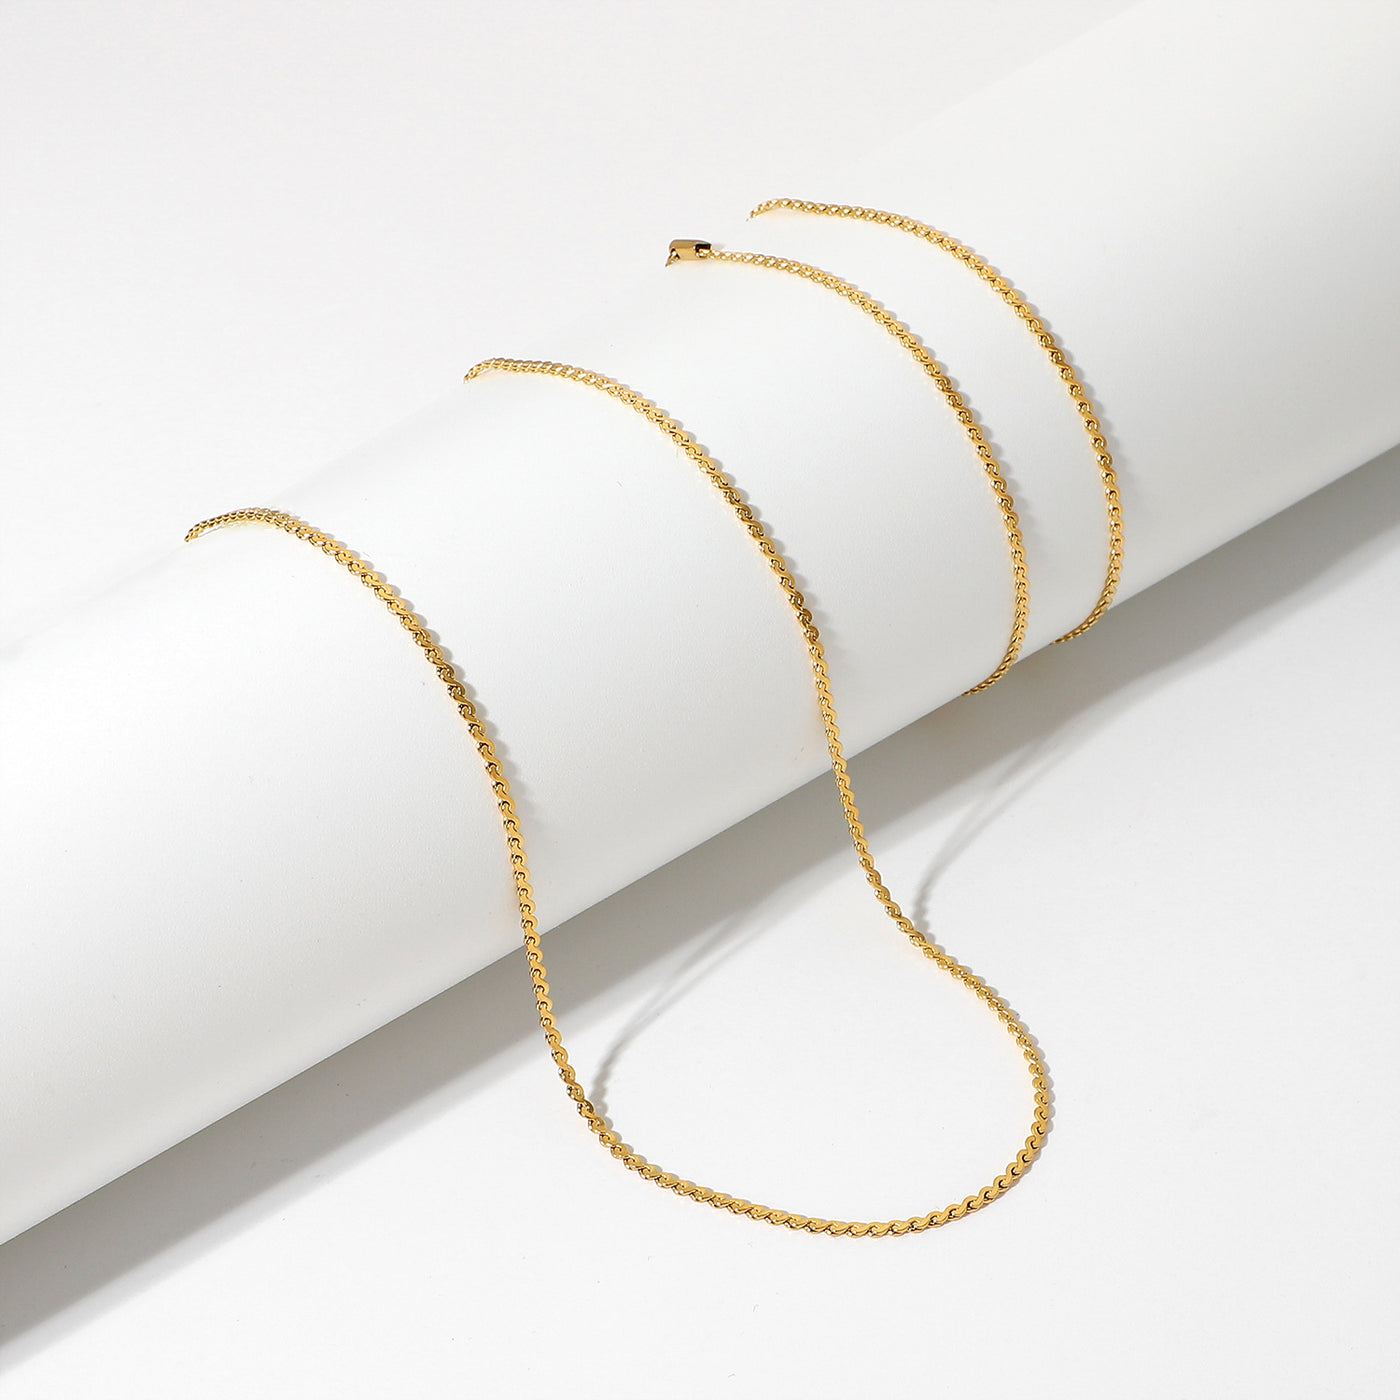 18K Gold Noble Fashion S Shape Chain Design Bracelet Anklet Necklace Set - Syble's